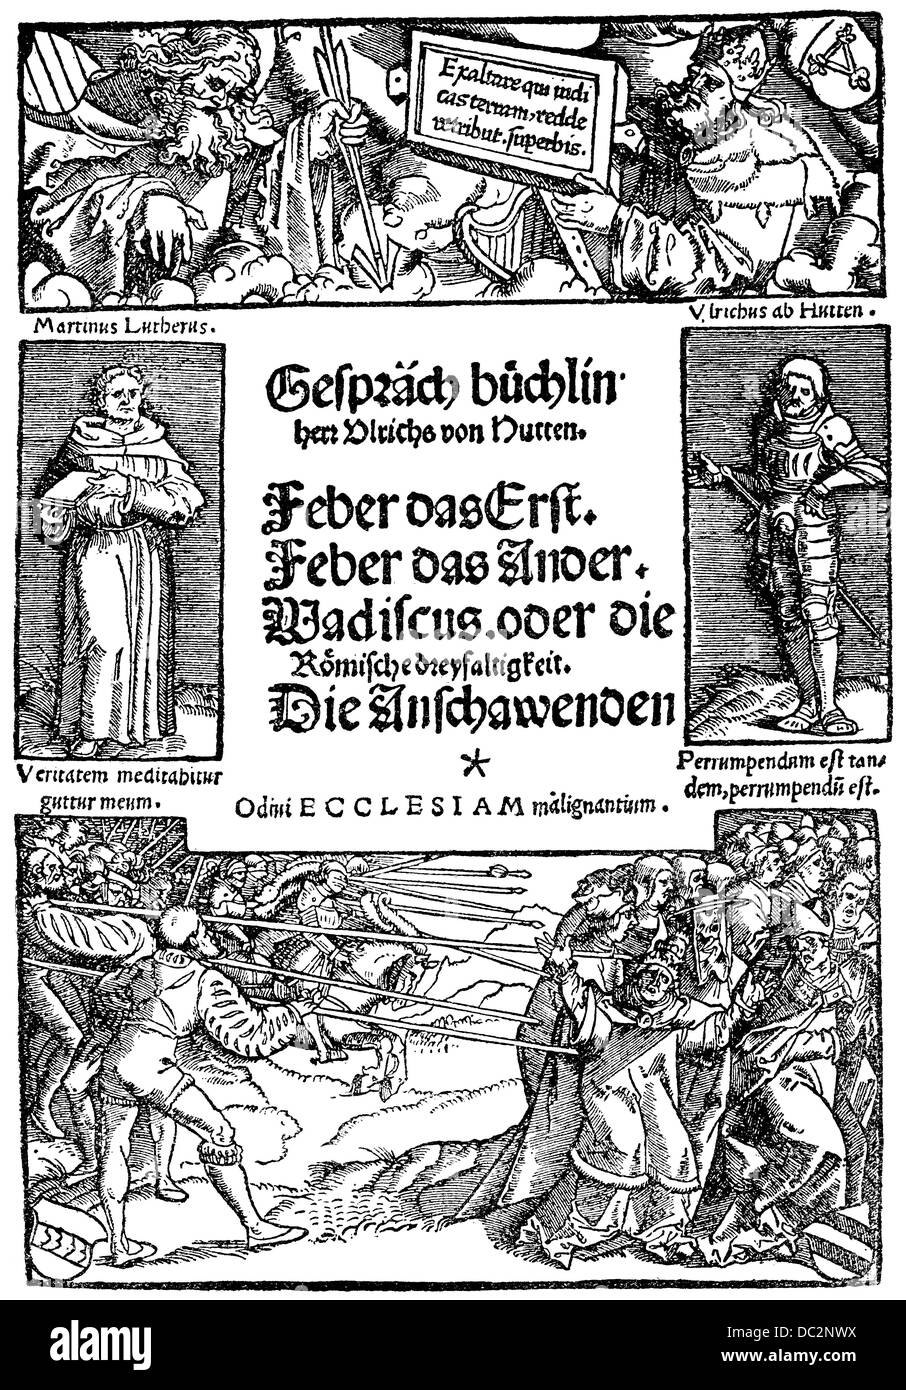 Titolo dell'intervista opuscolo, 1521, da Ulrich von Hutten, 1488-1523 Foto Stock